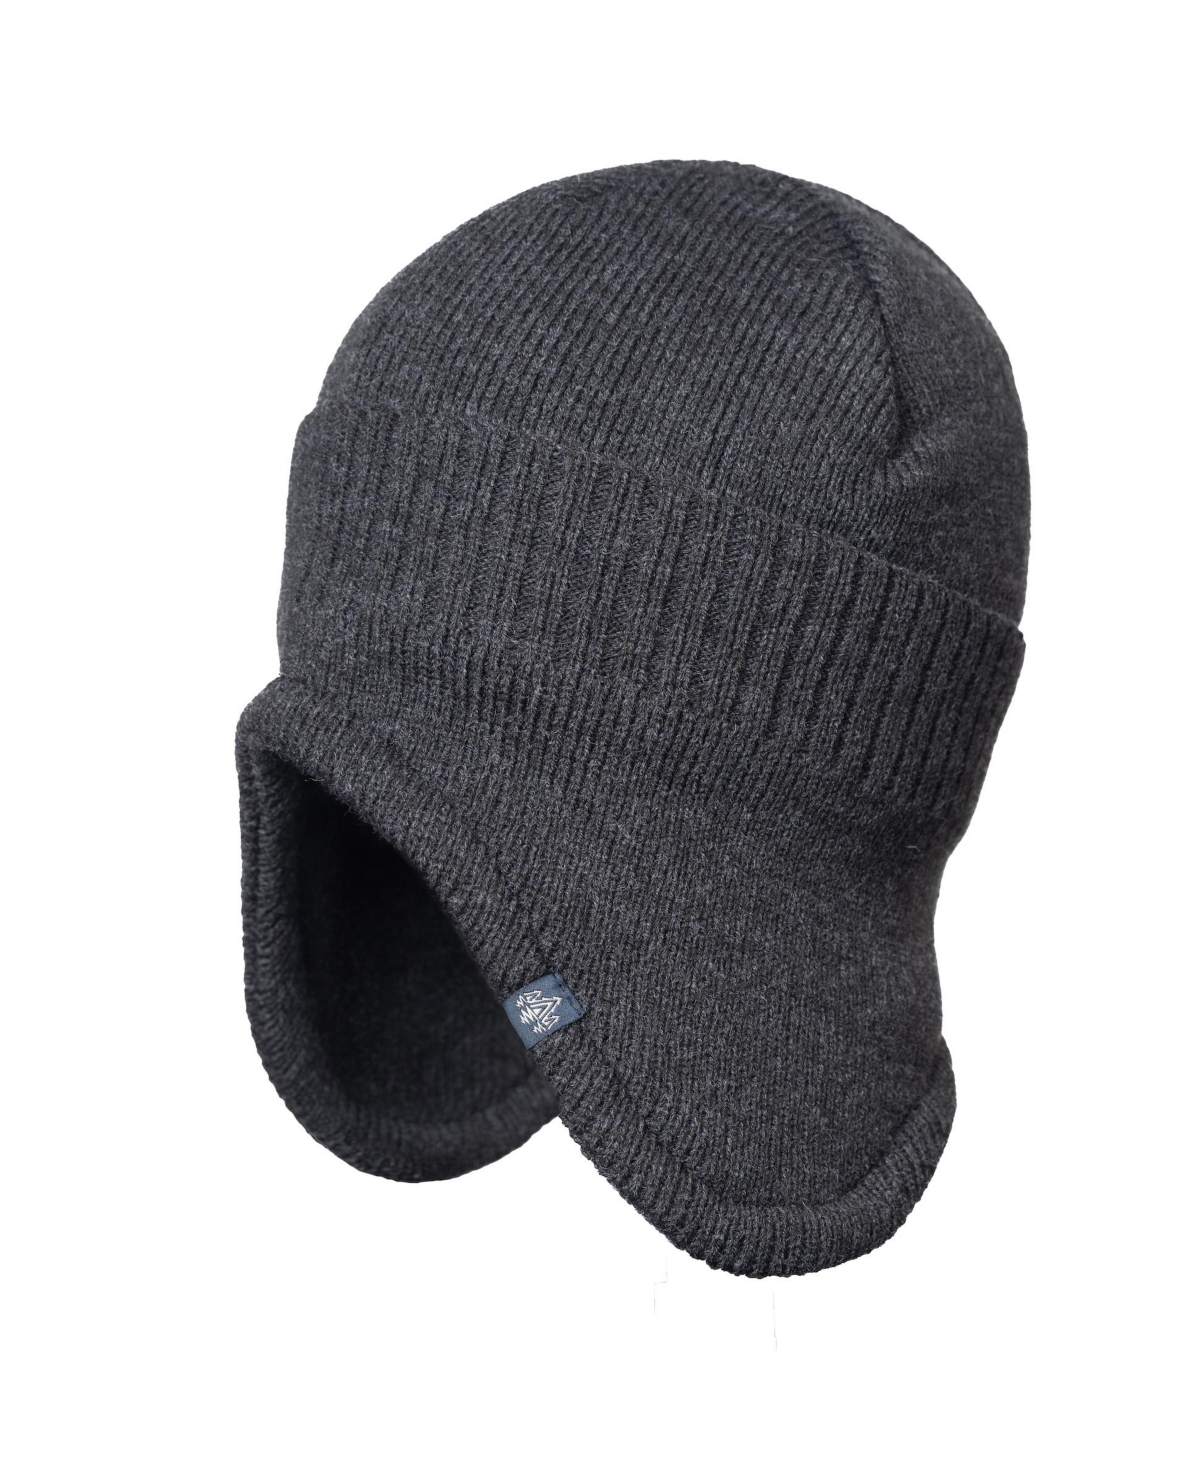 Men's Trapper Fleece Lining Hat - Charcoal